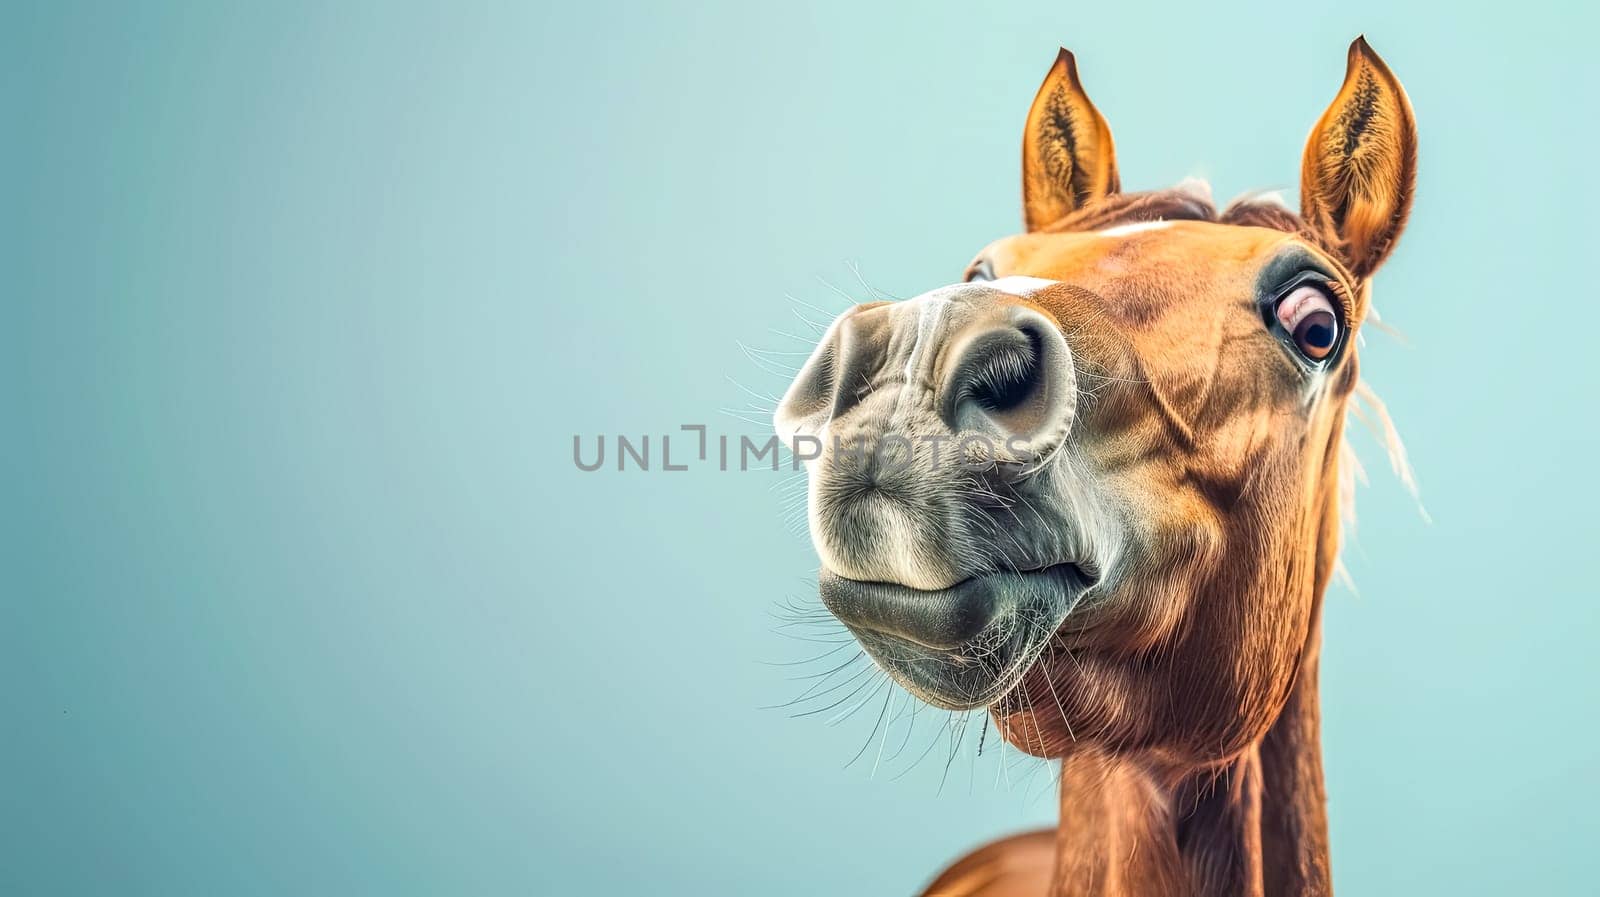 Amused horse on blue background by Edophoto